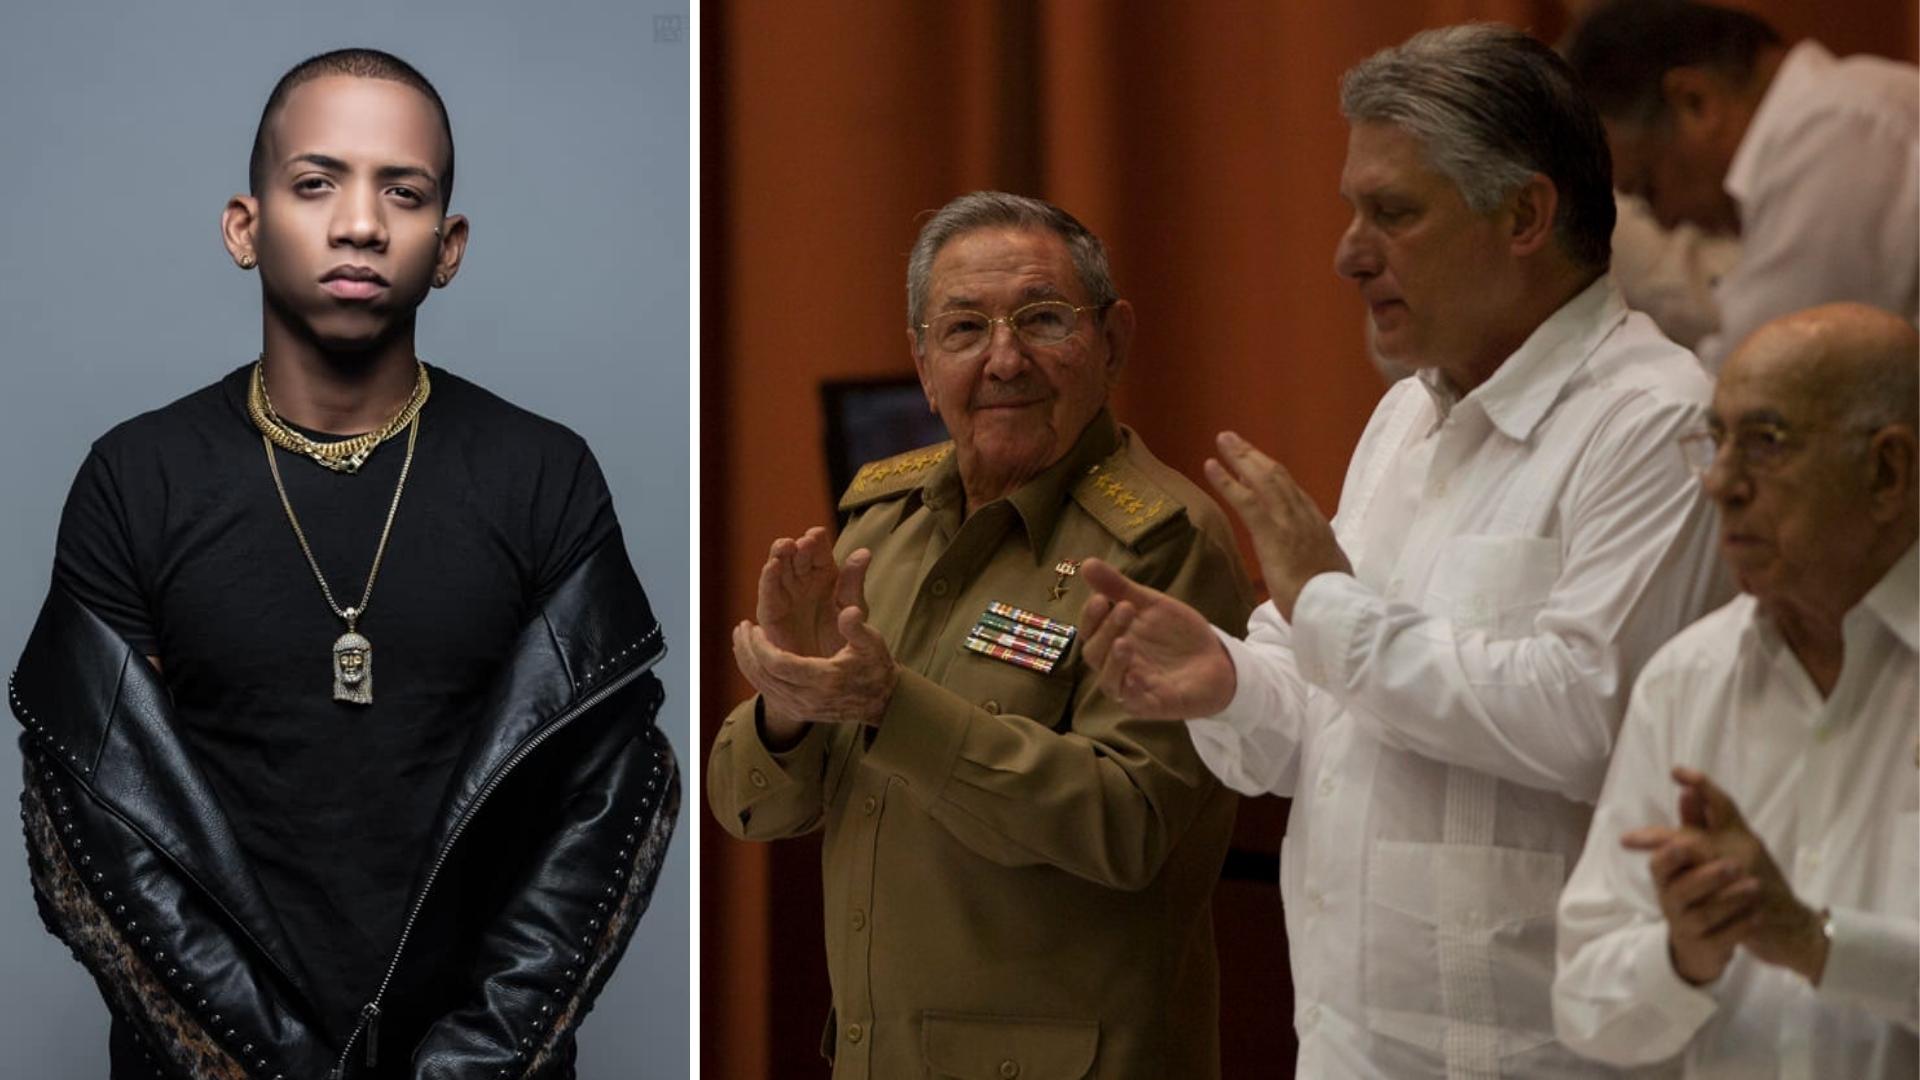 El úniko y dirigentes cubanos